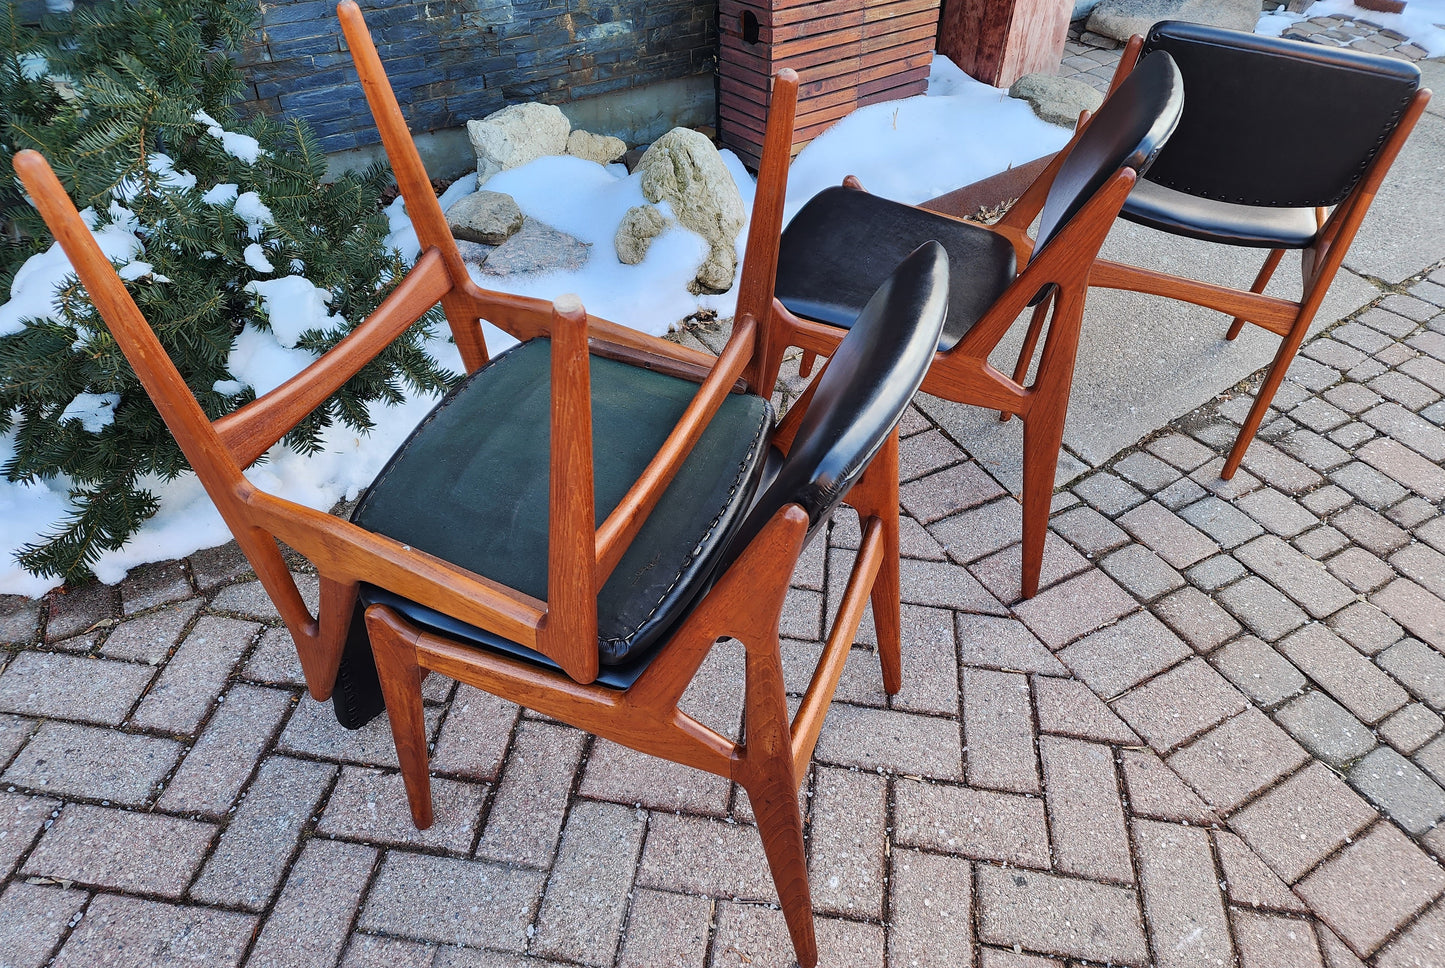 4 REUPHOLSTERED in mohair Danish Mid Century Modern Teak Swivel Back Chairs by Arne Vodder, Ella